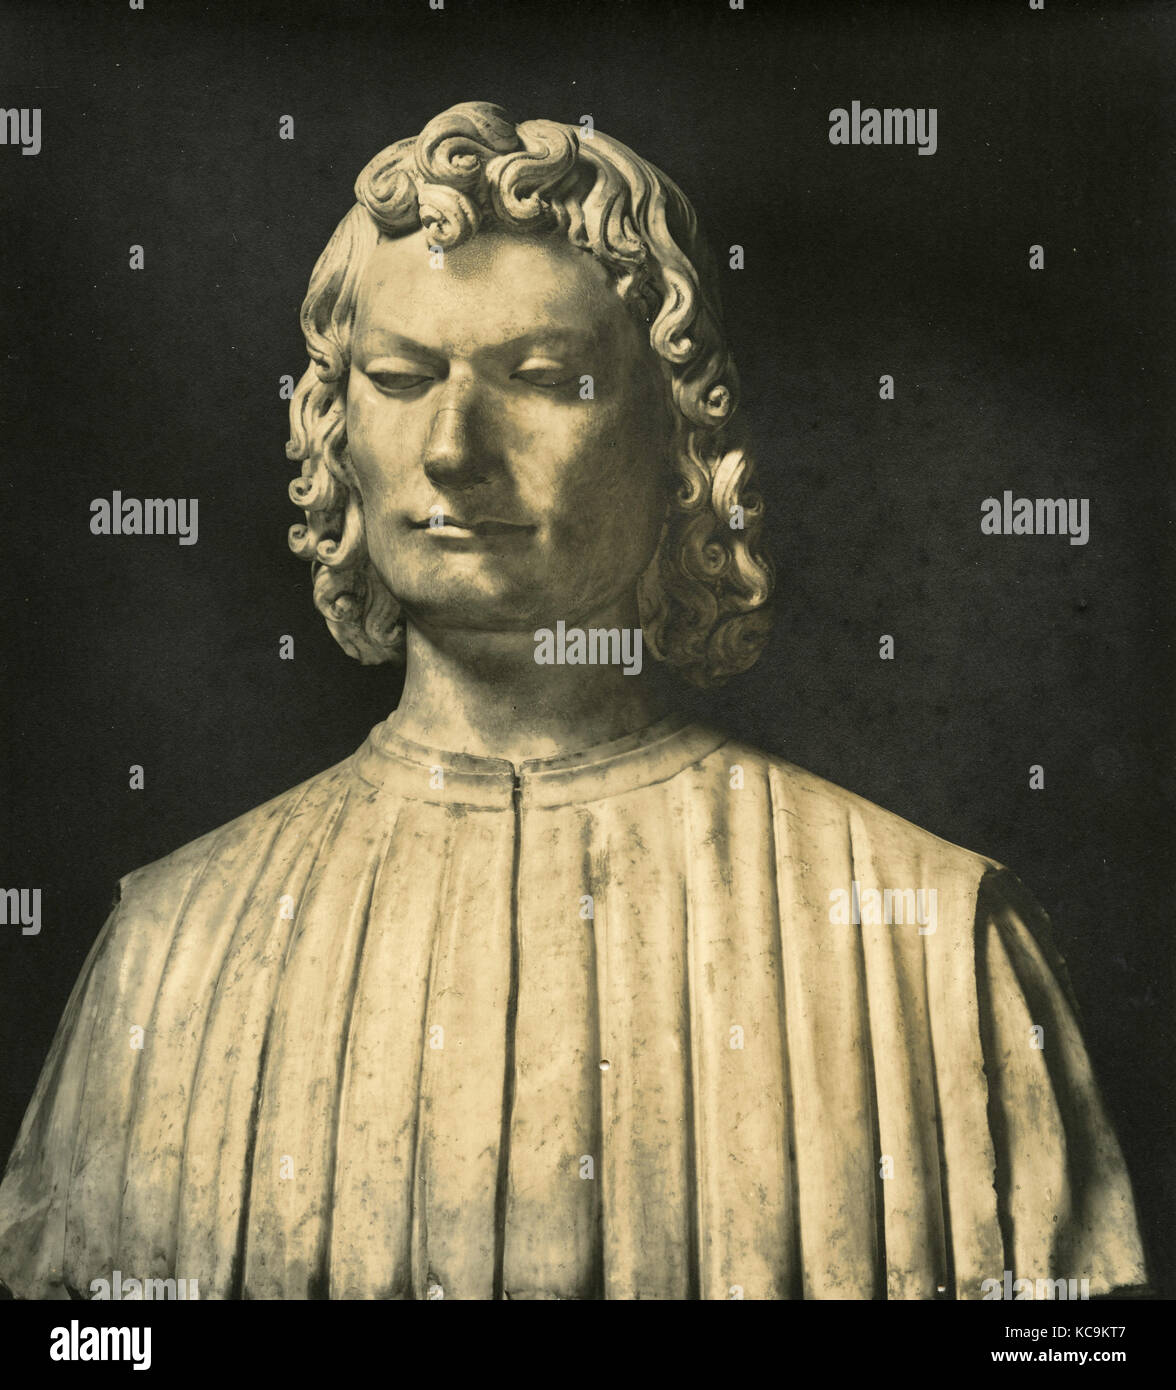 Giuliano de' Medici, portrait Stock Photo